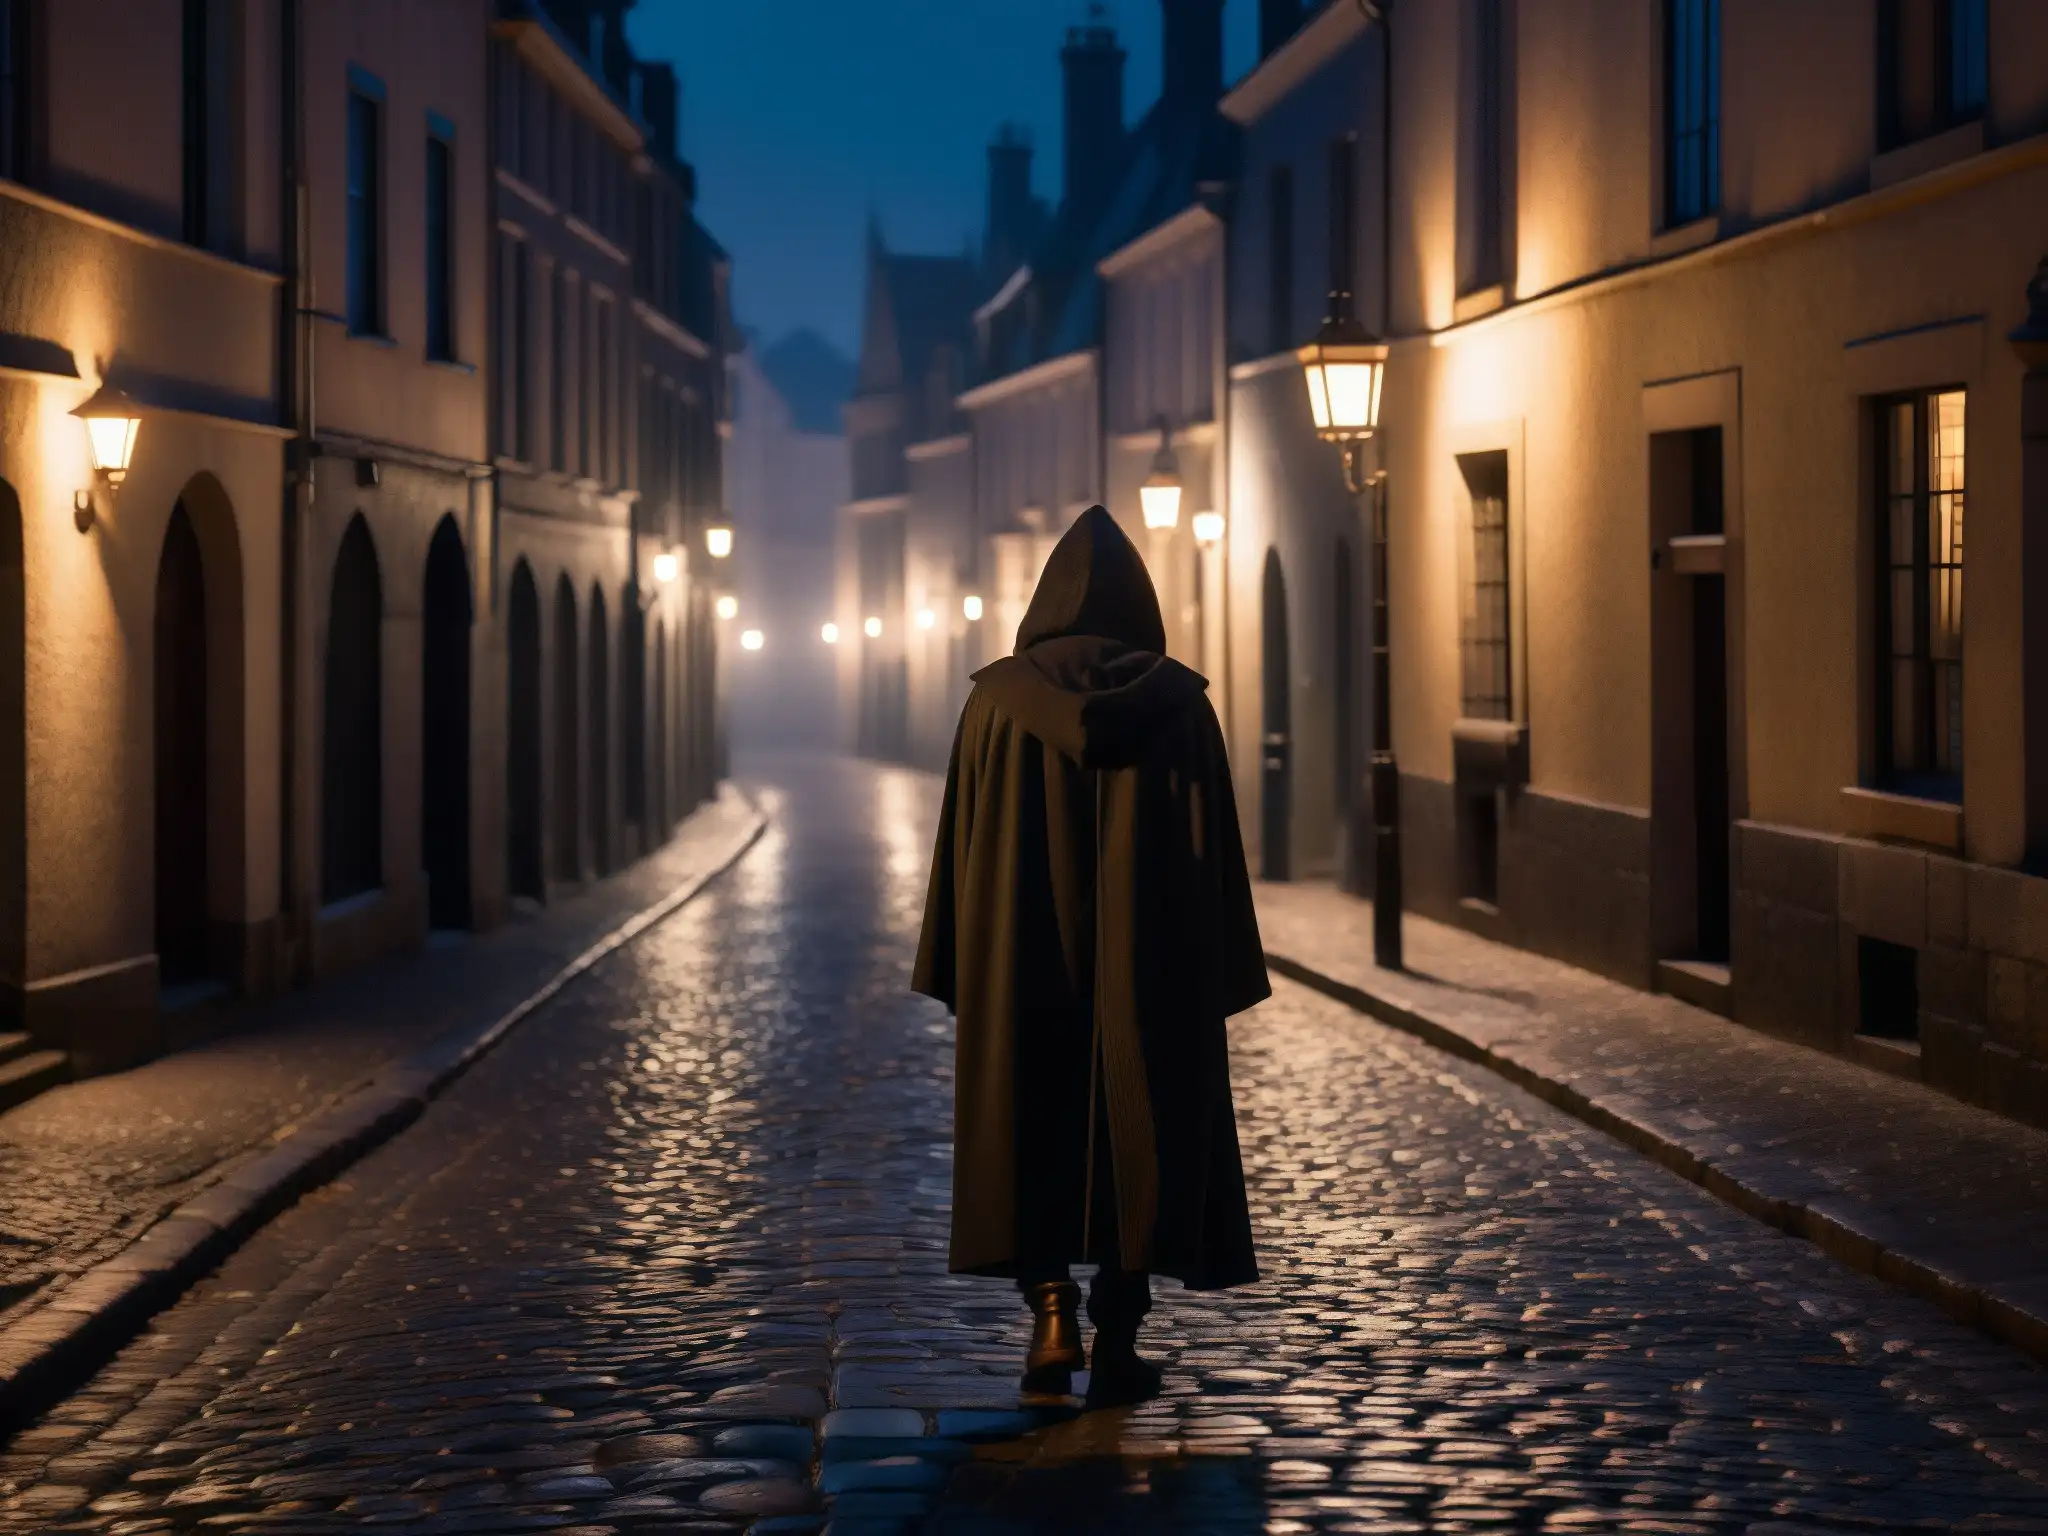 Figura en capa con capucha sumida en pensamientos en calle urbana misteriosa, perpetuación de supersticiones en leyendas urbanas